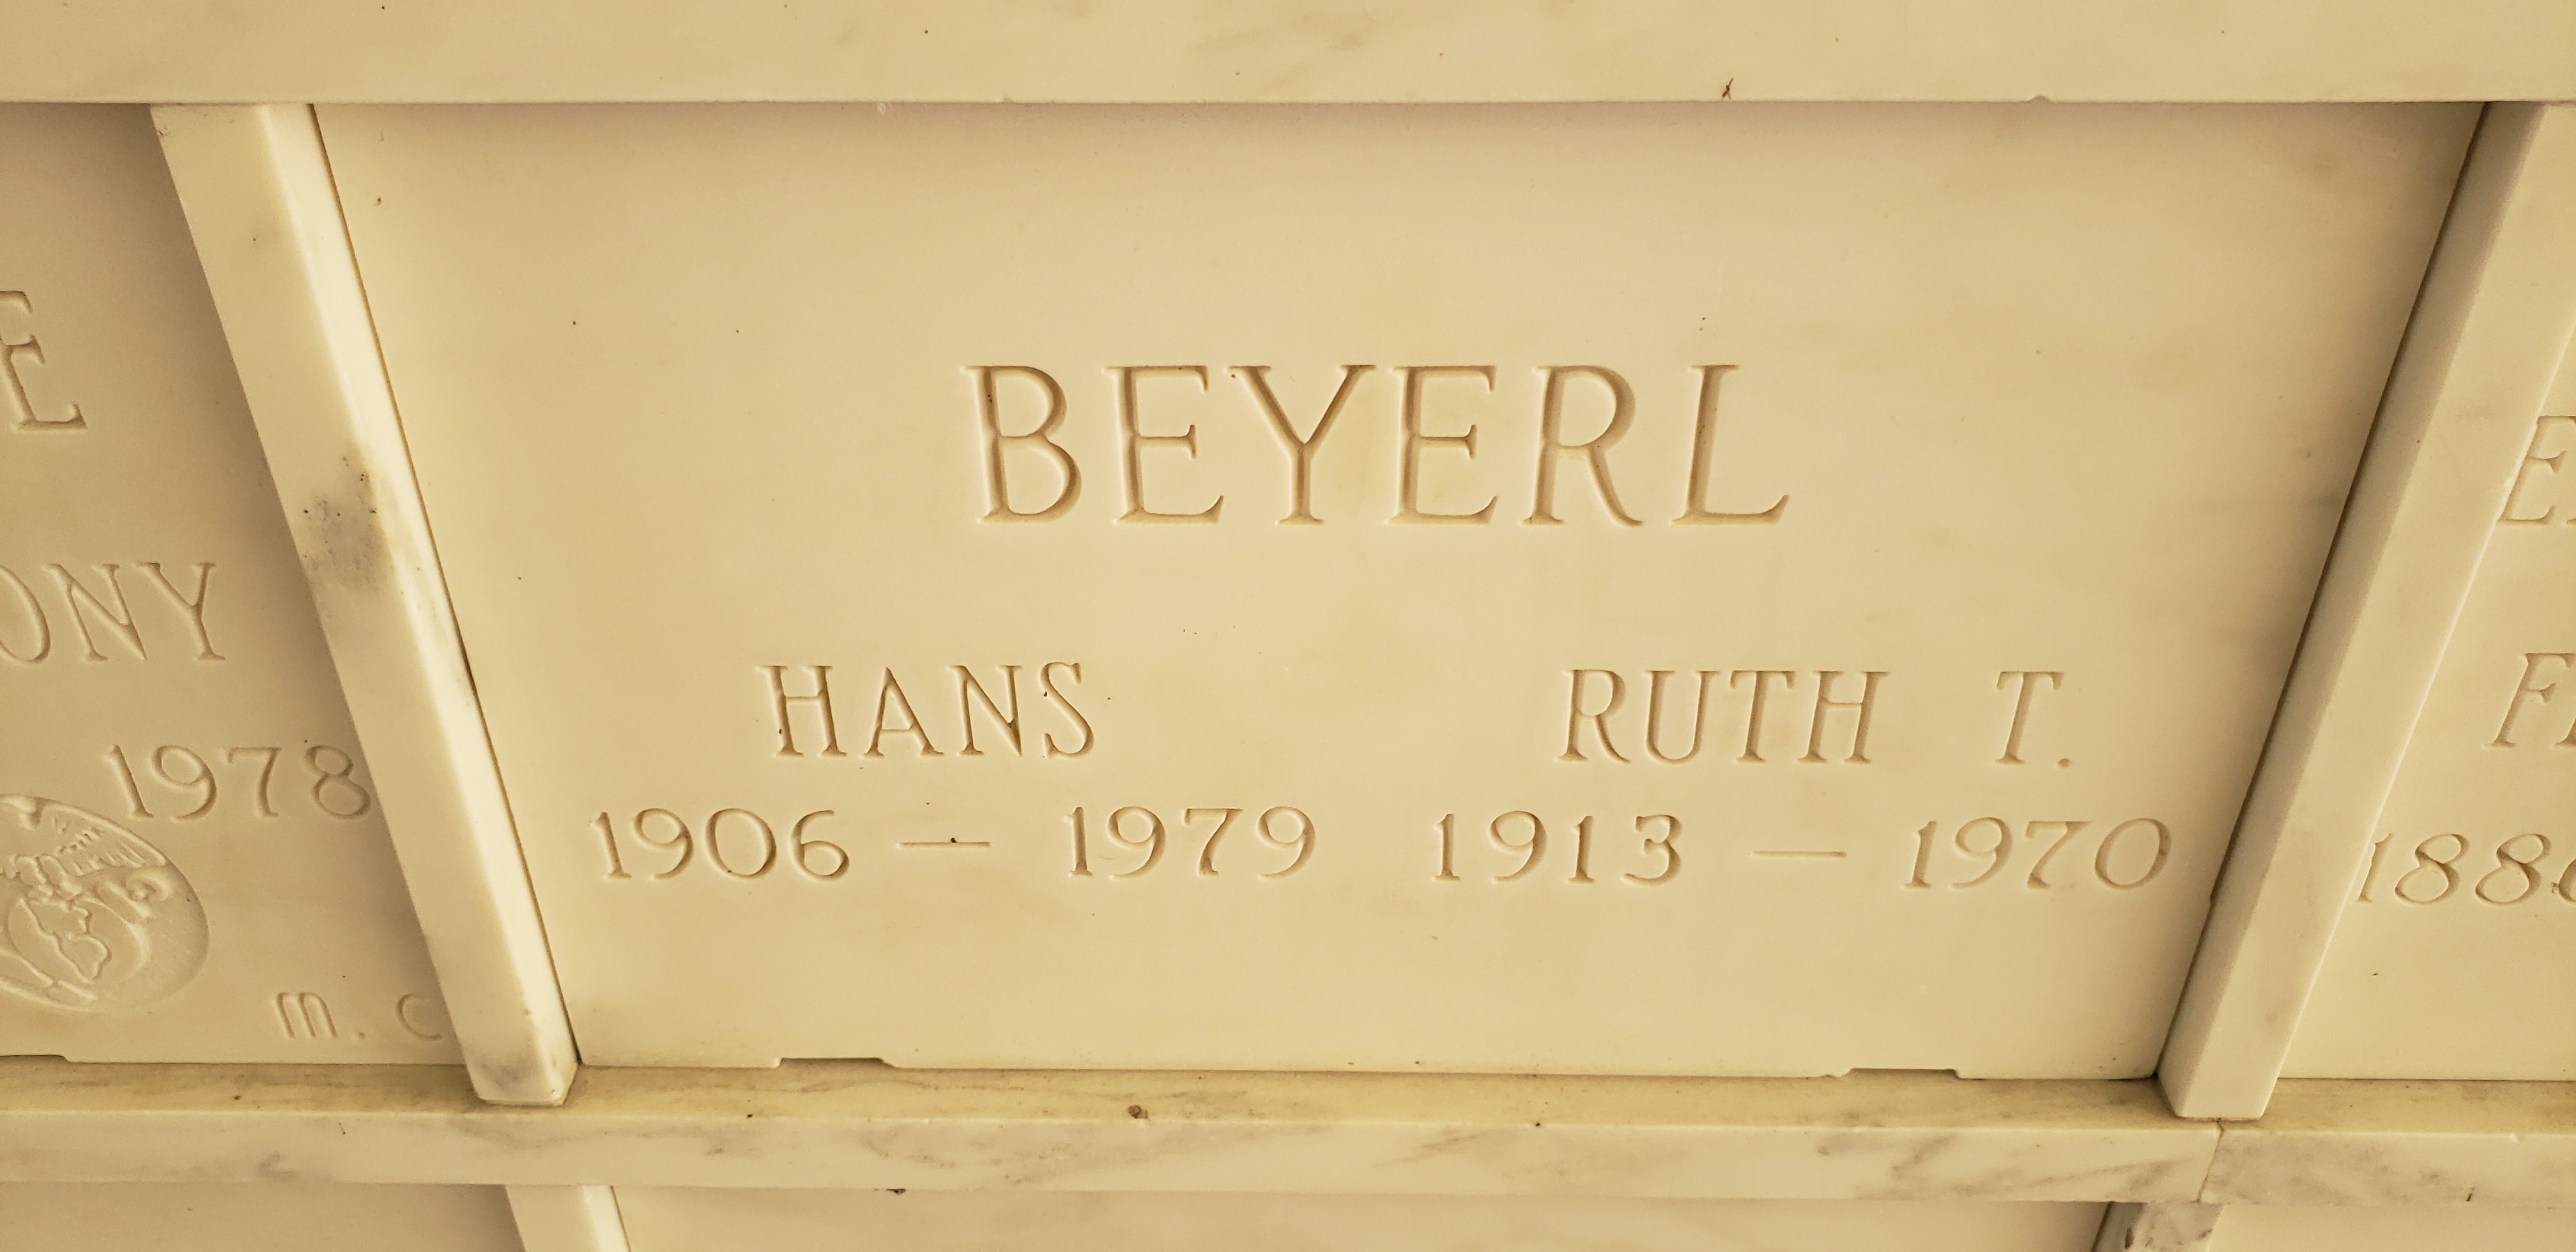 Hans Beyerl